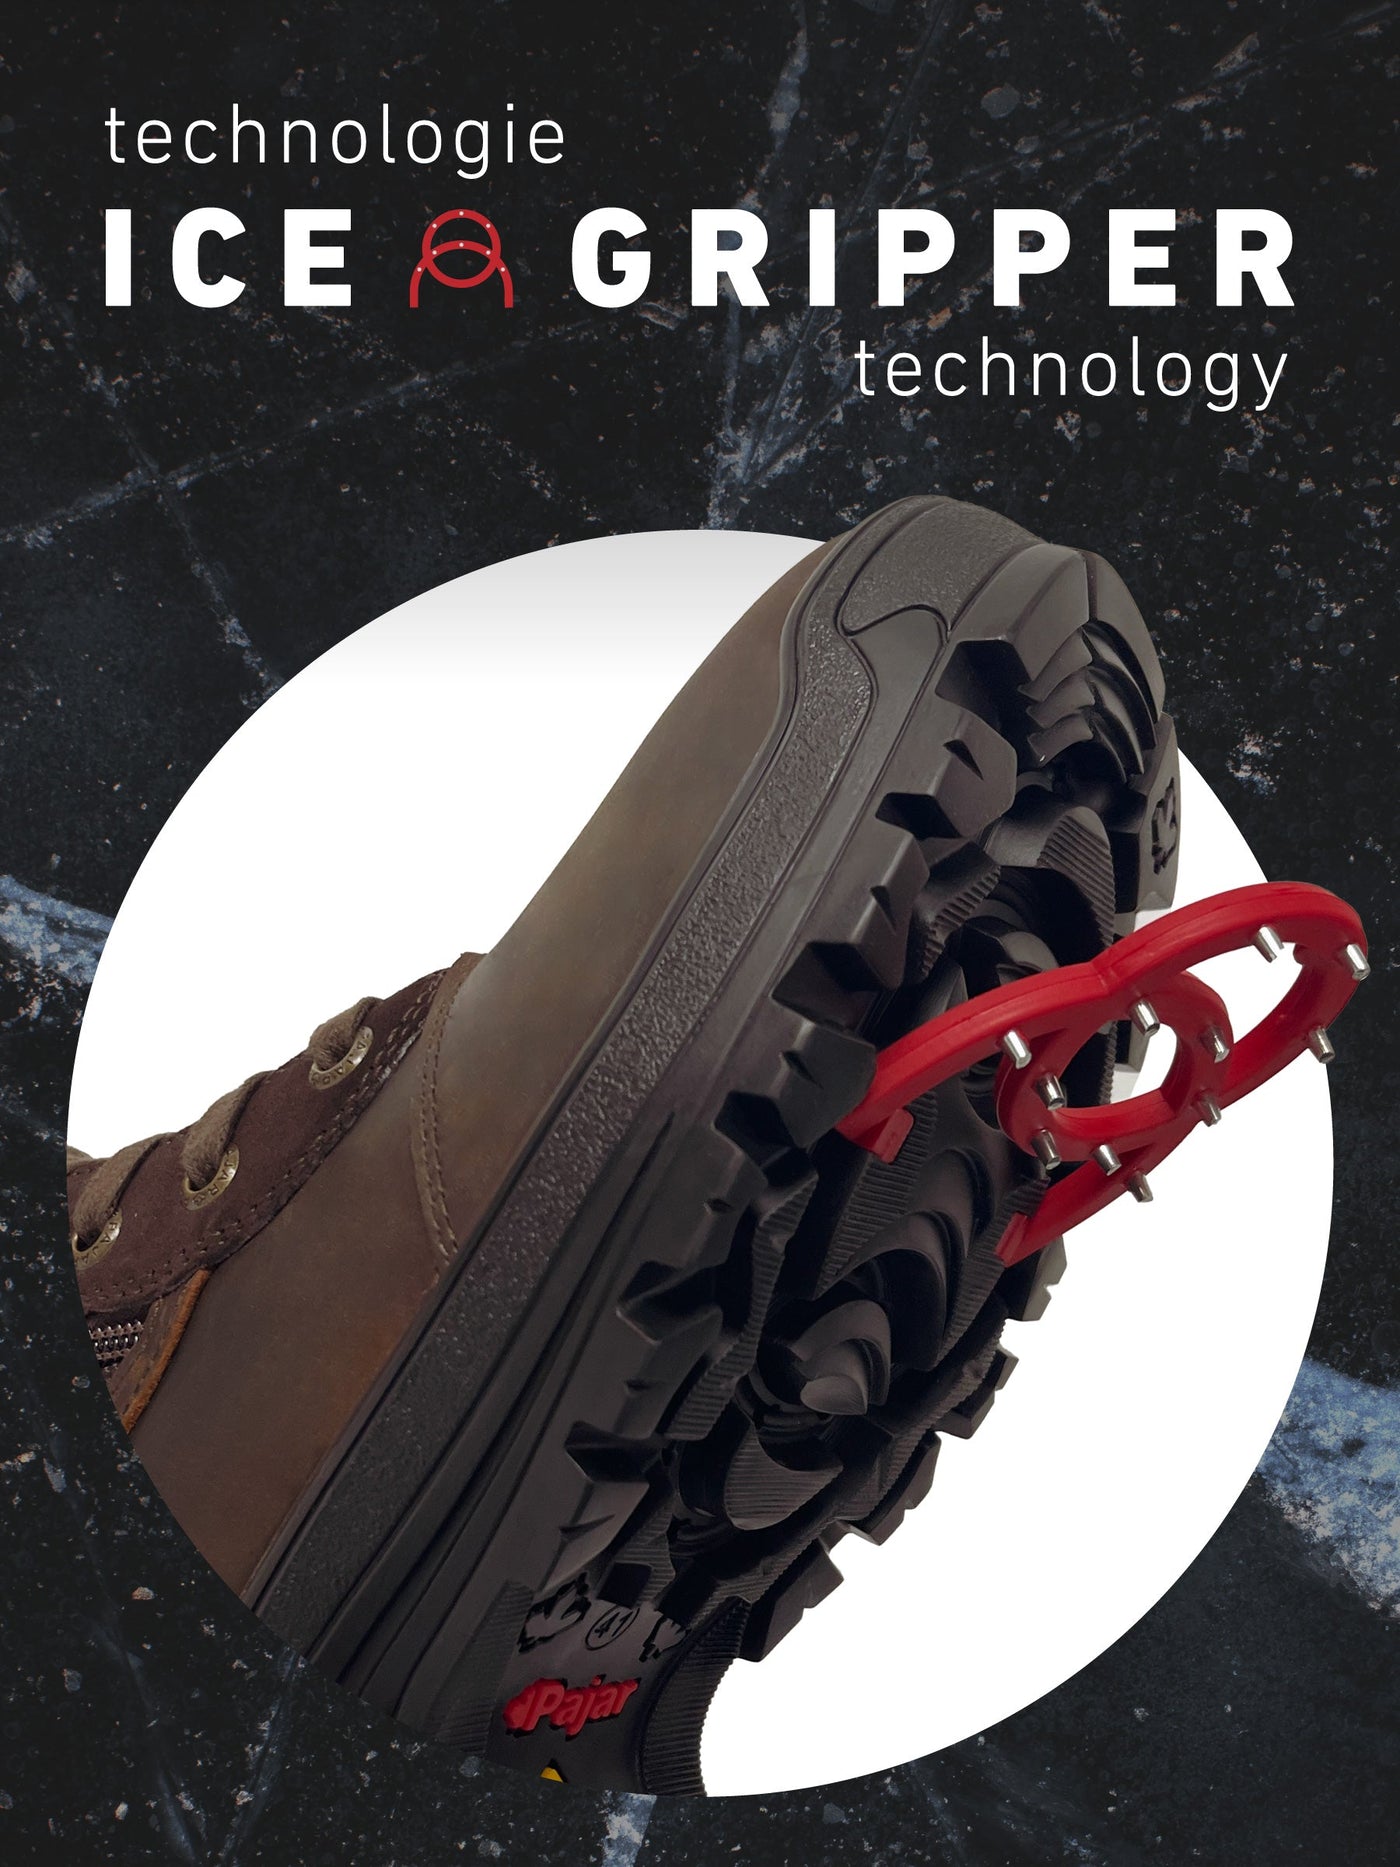 Trooper IG Men's Boot w/ Ice Grippers